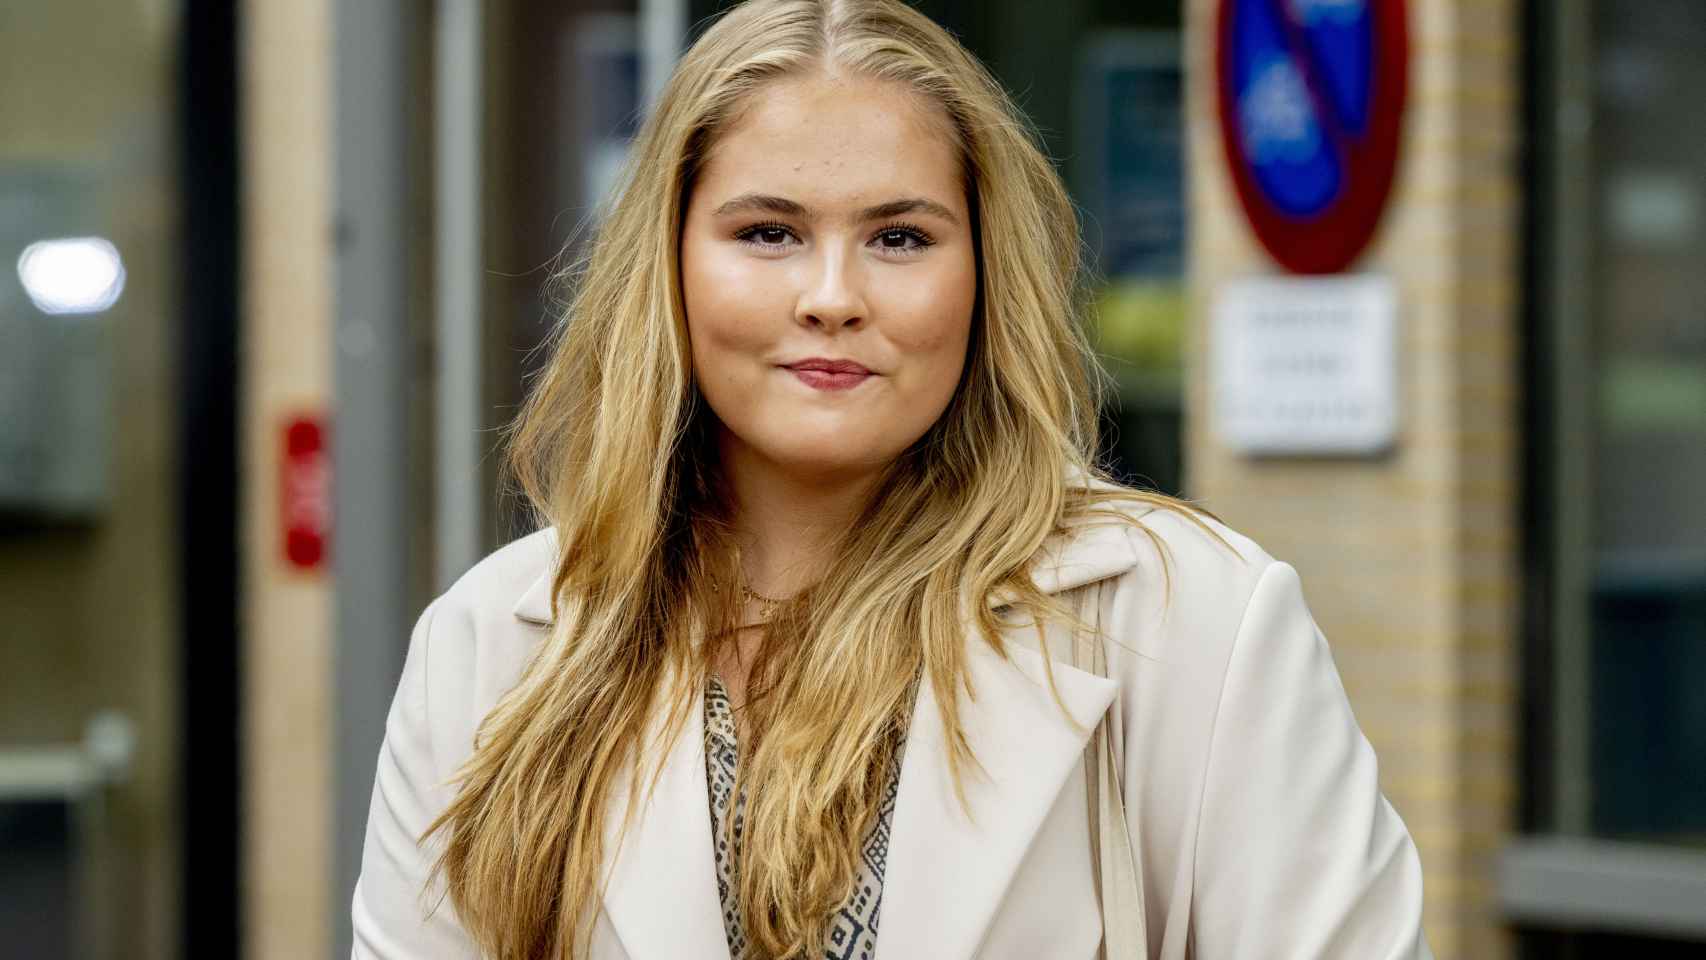 Amalia de Holanda en su primer día en la Universidad de Ámsterdam.